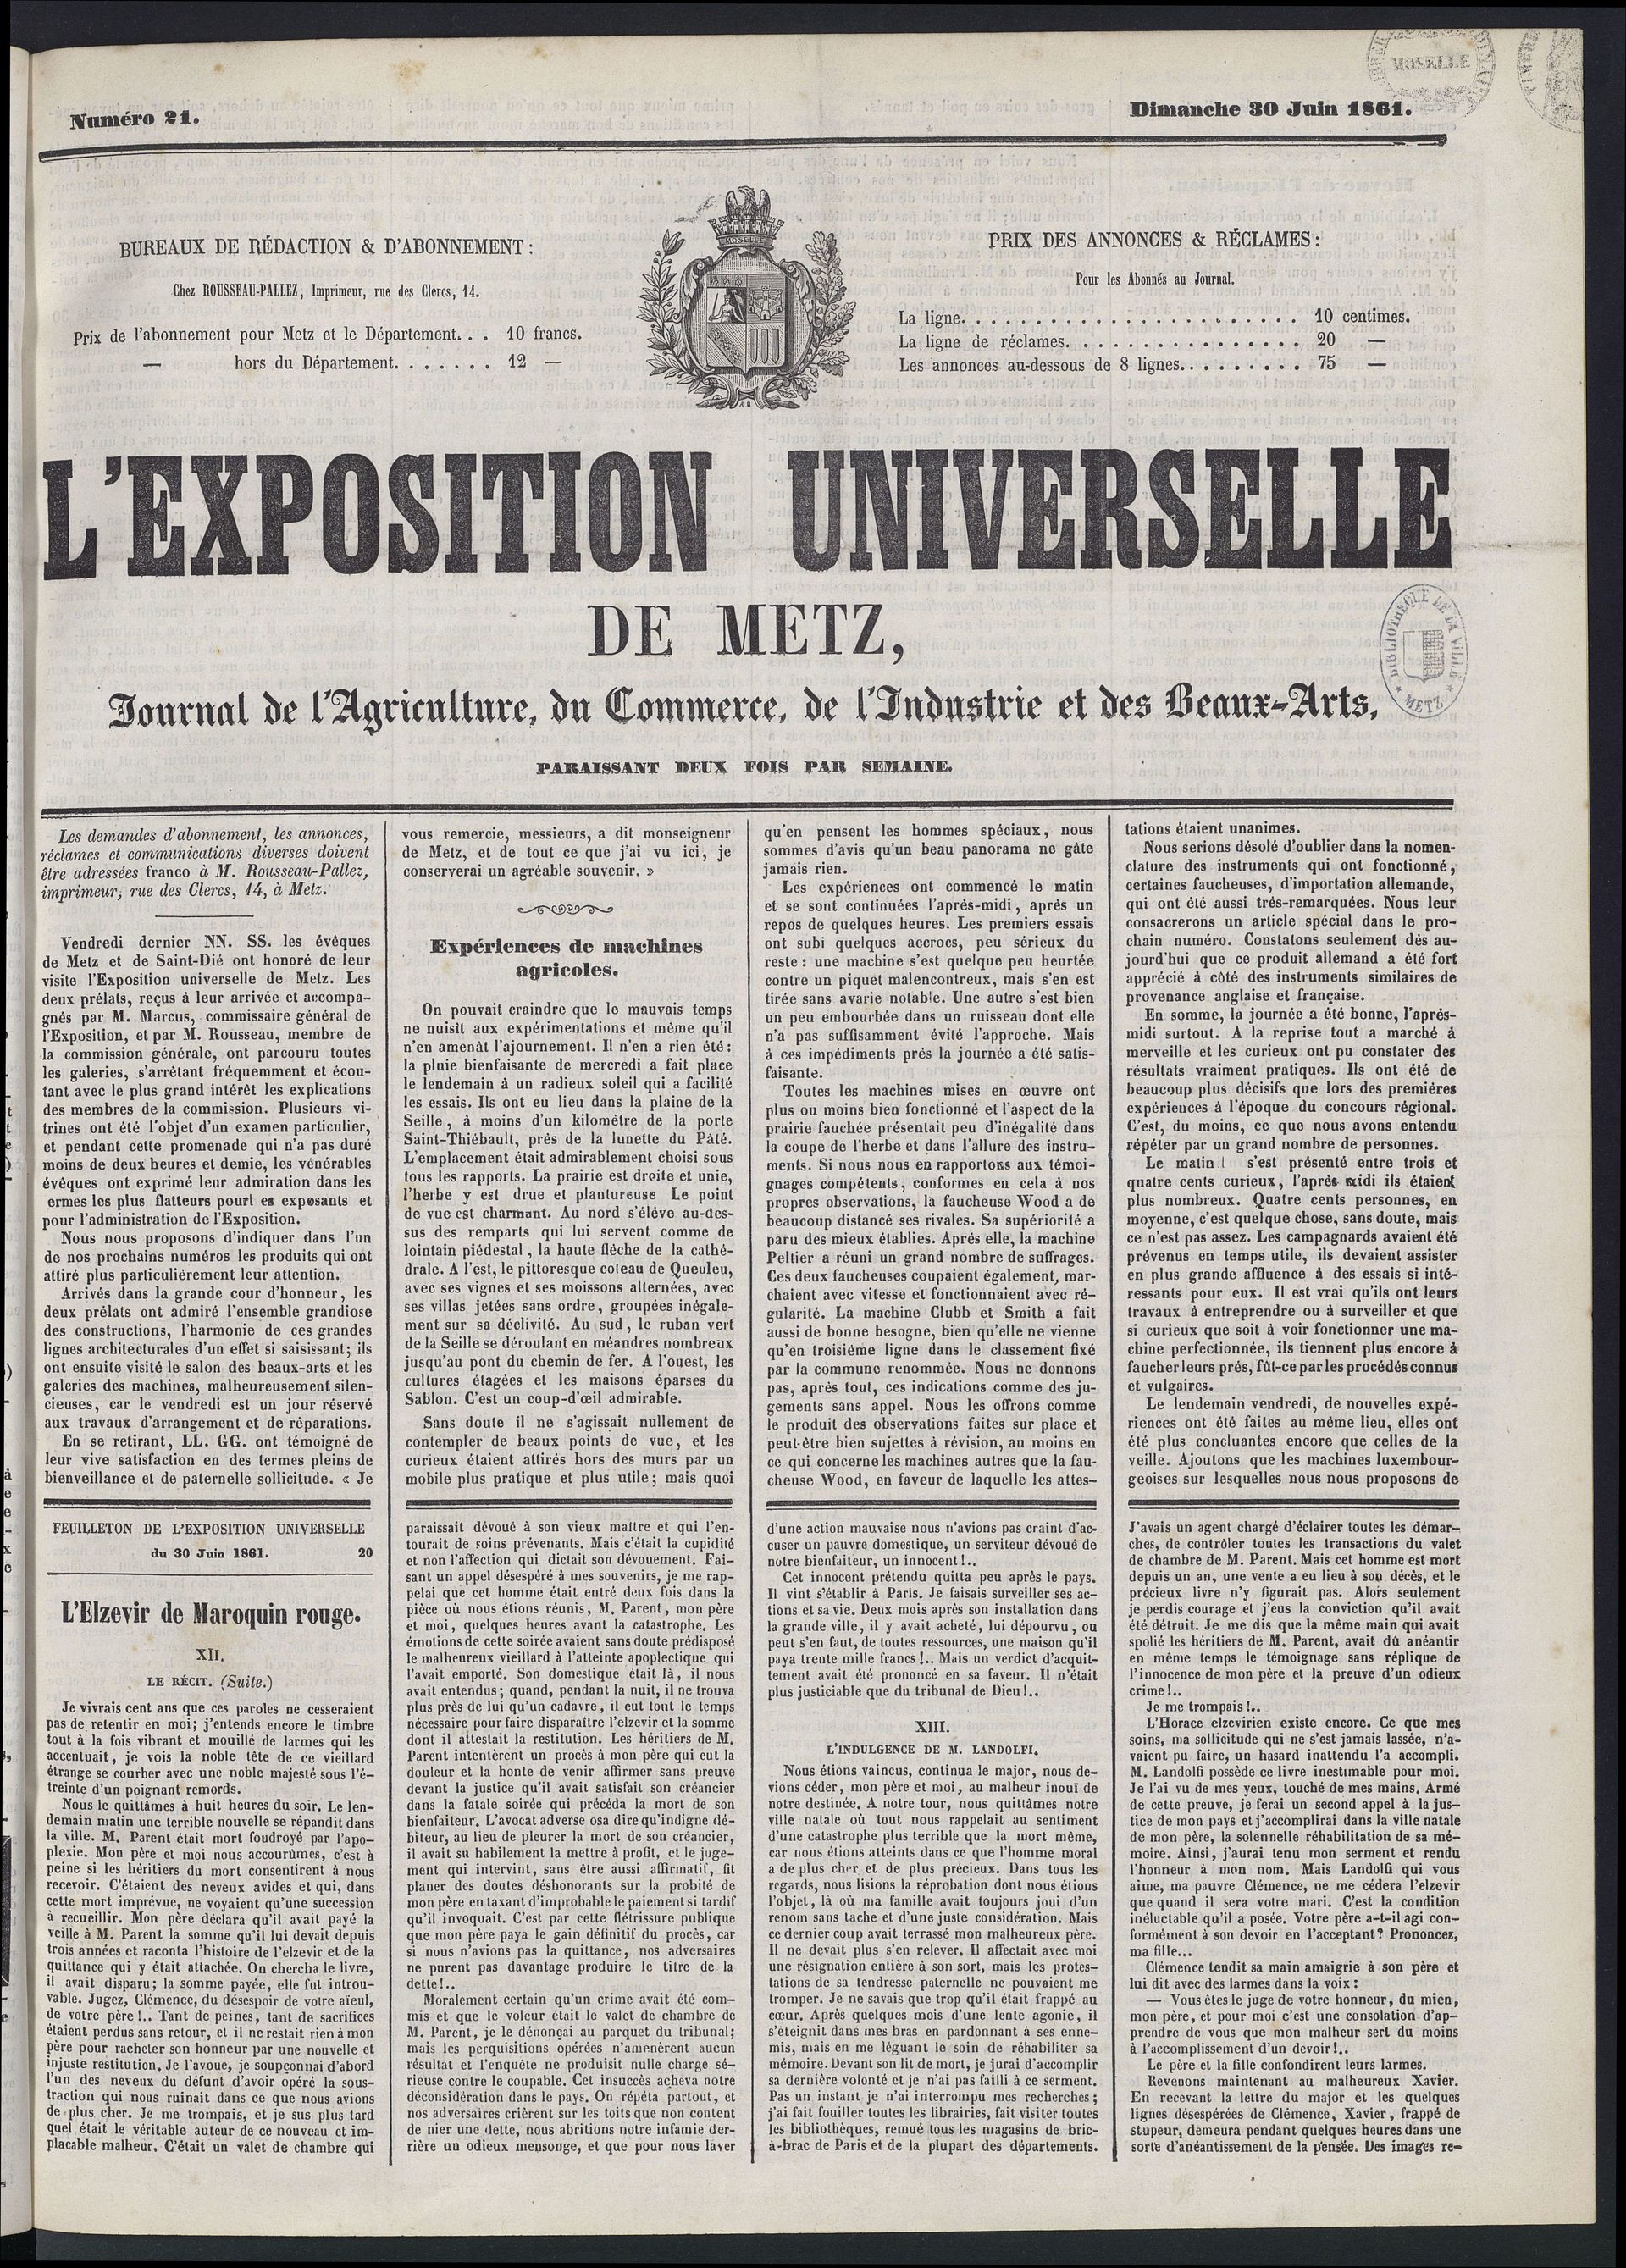 L’Exposition universelle de Metz